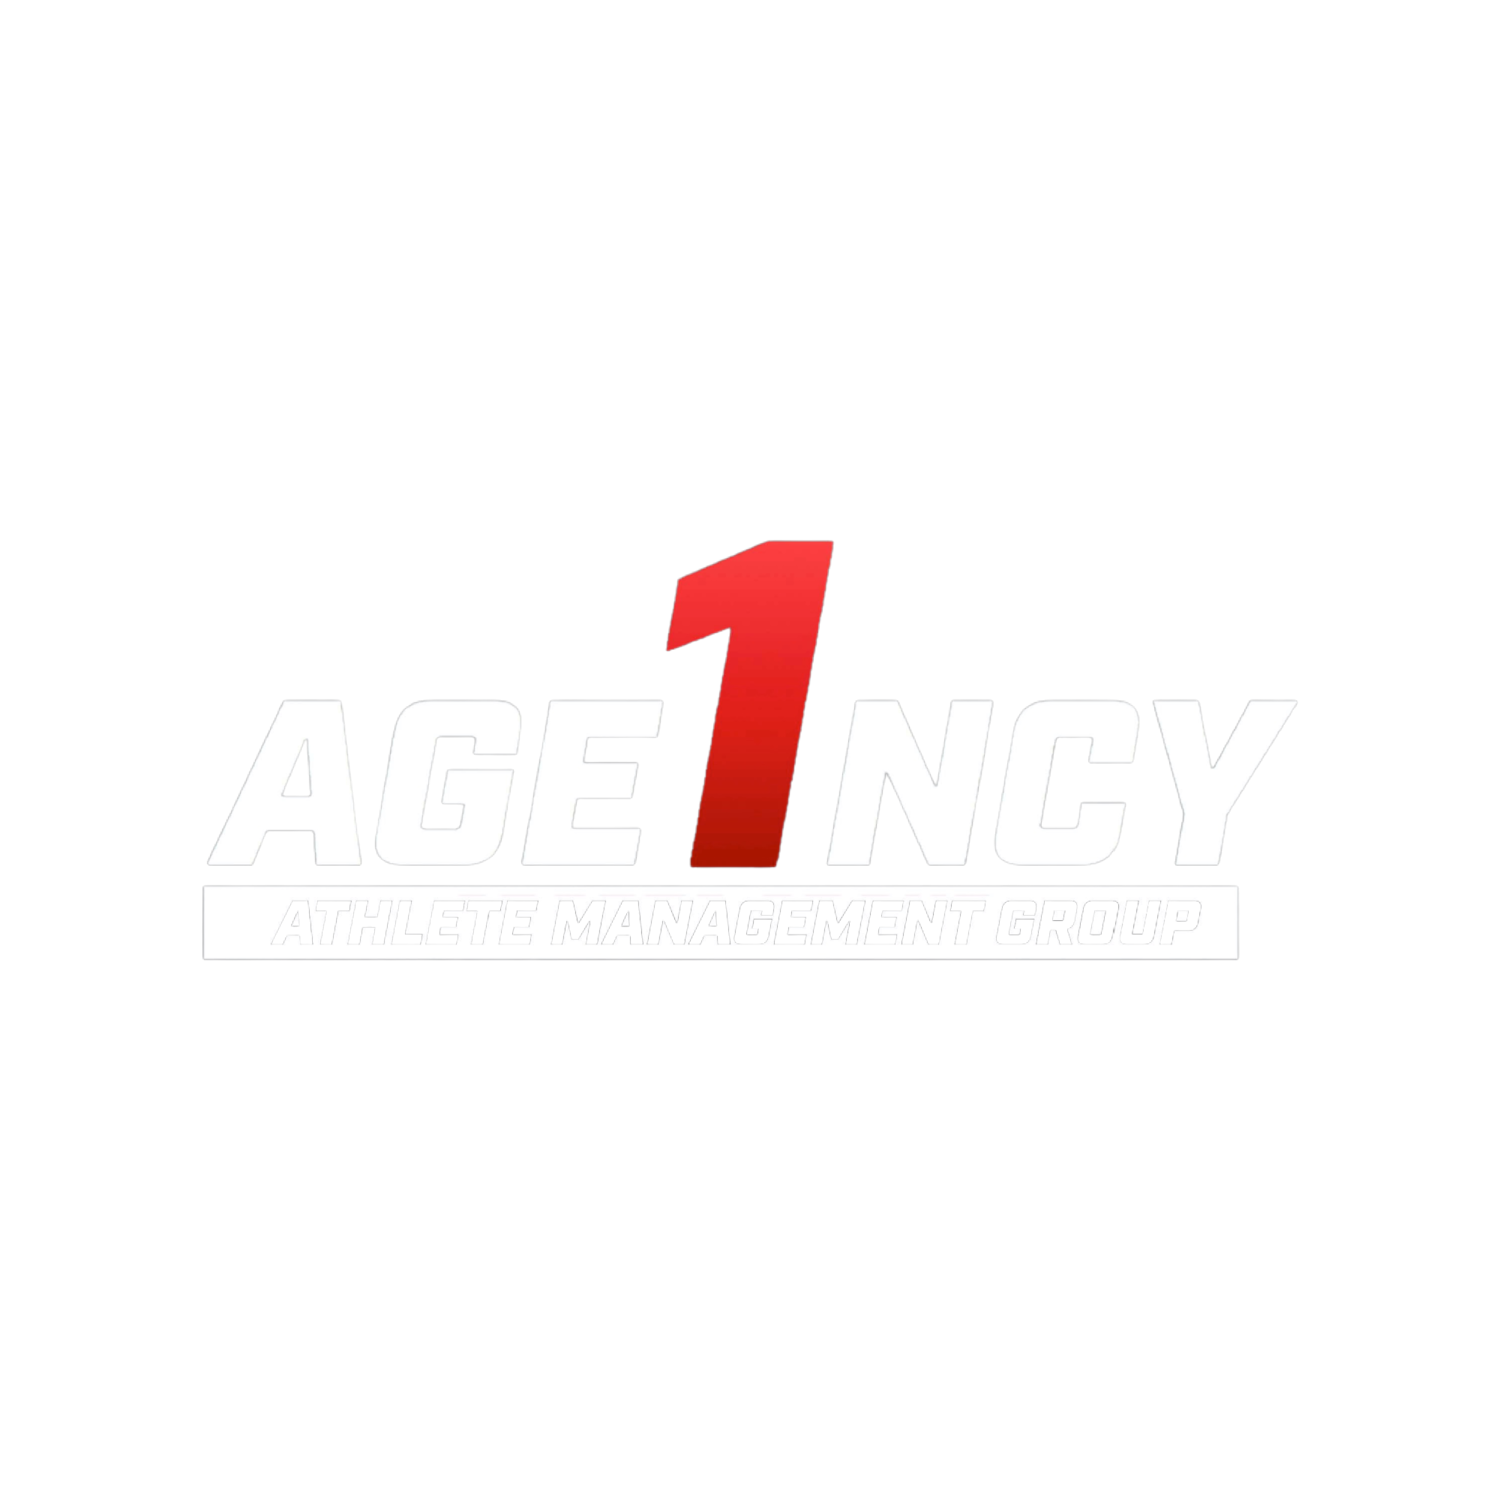 Agency1AthleteManagementGroup